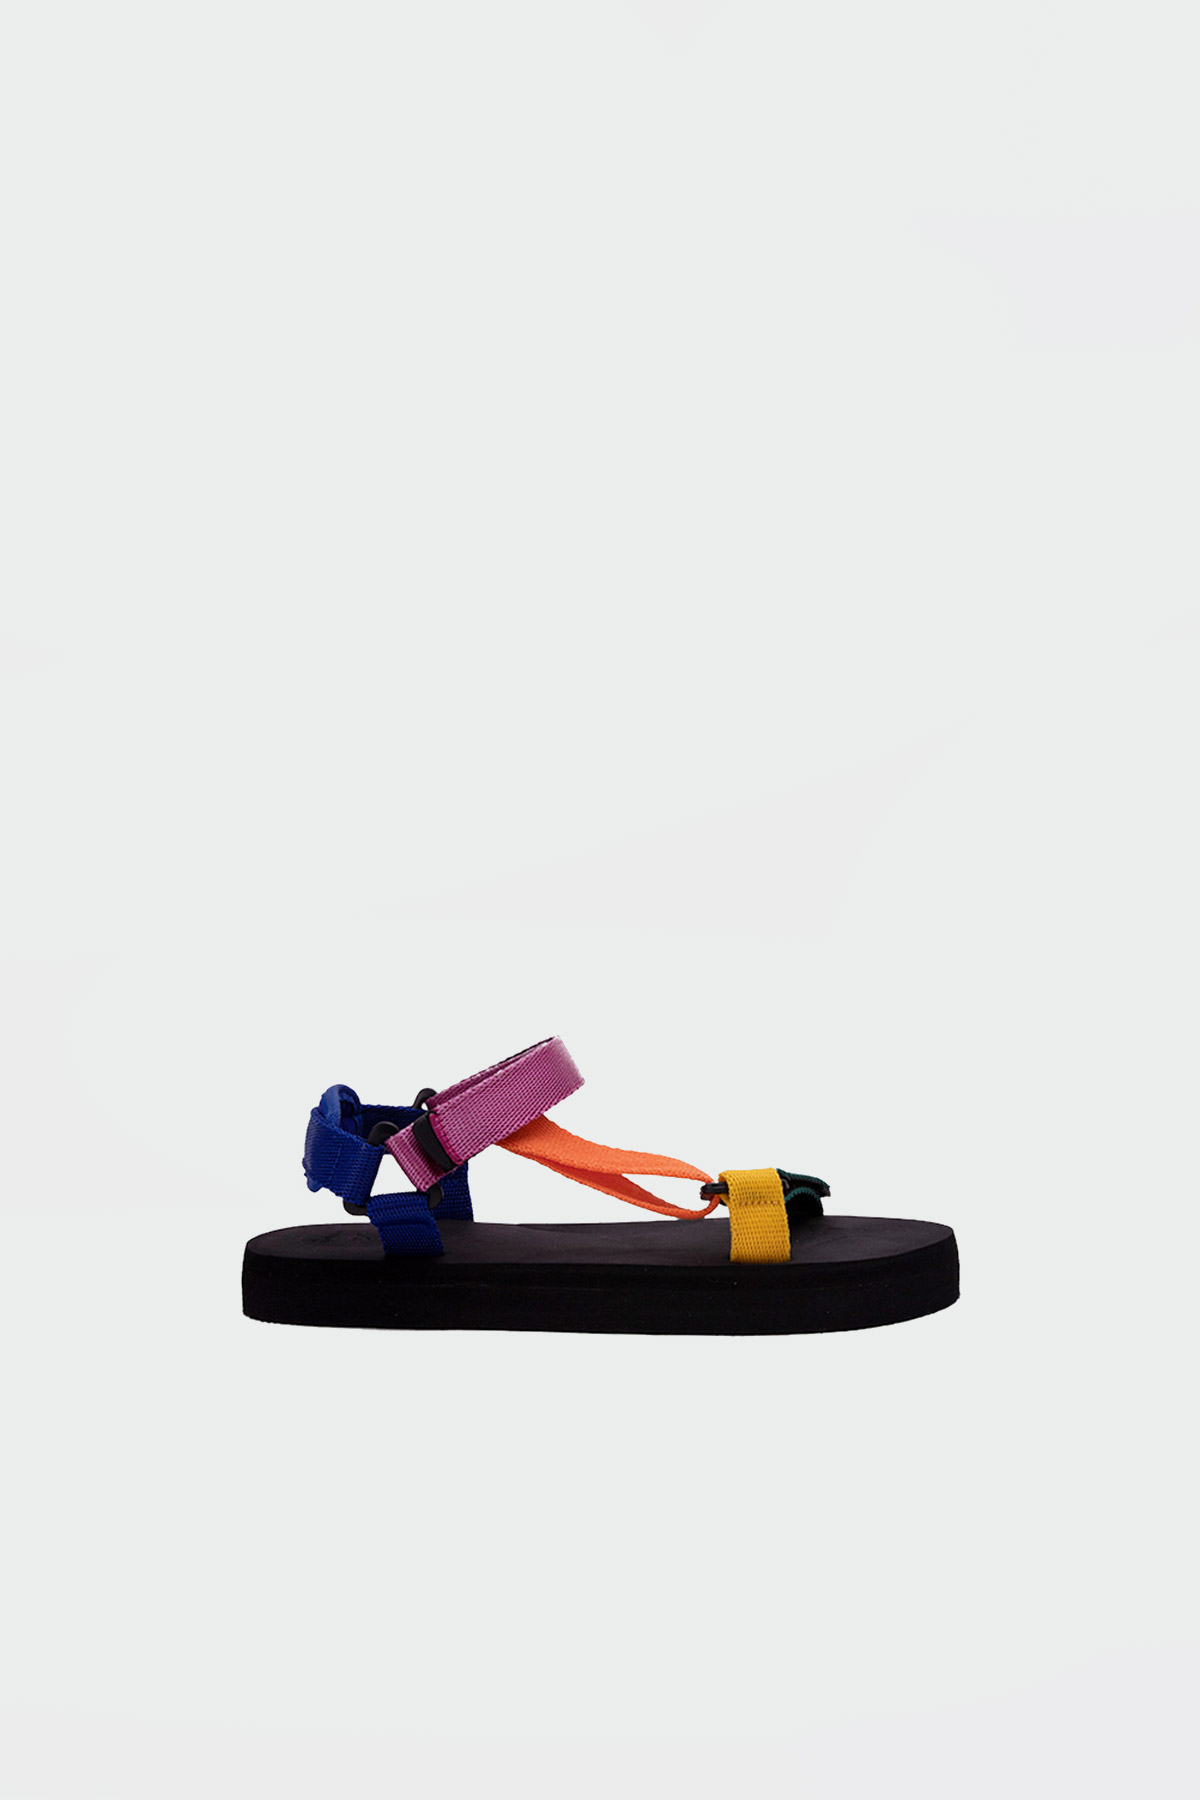 Mirabelle Eva Taban Bantlı Renkli Kadın Sandalet